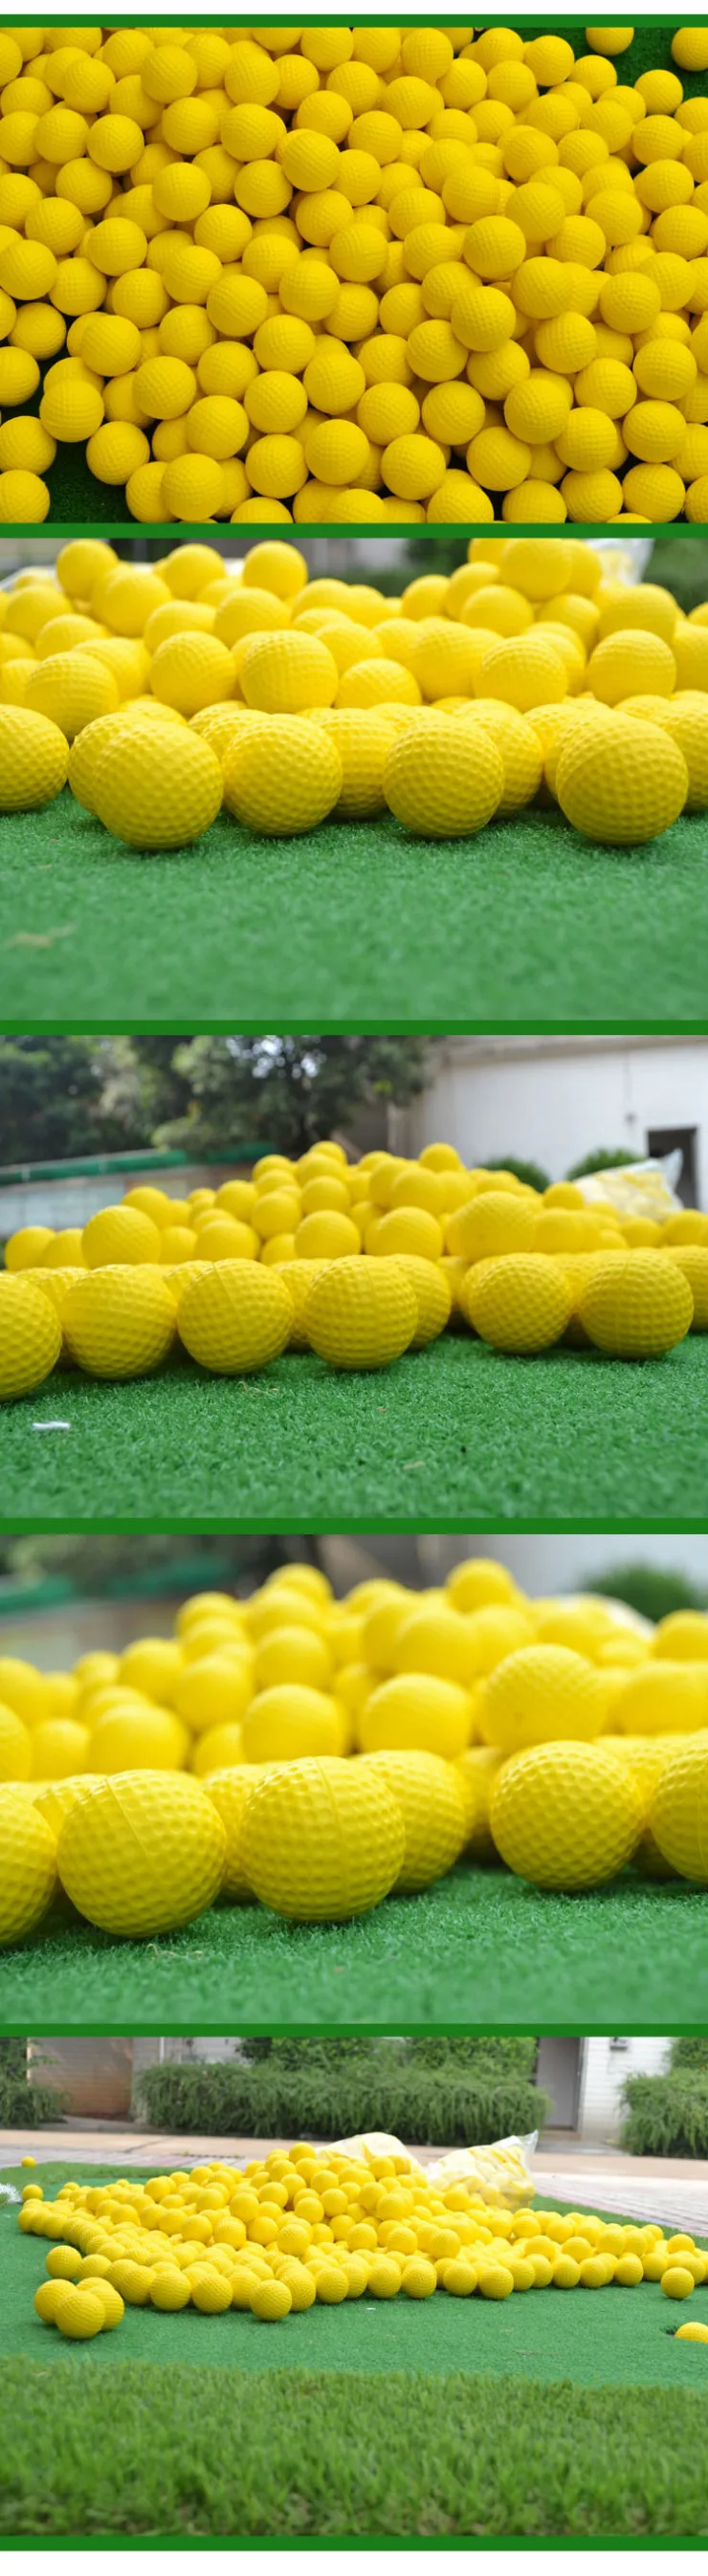 42 мм упругие мячи для игры в гольф, мягкие мячи для игры в гольф, желтые, цветные, ПУ мячи для тренировок, пена для игры в гольф, губки, резиновые шарики, капсулы